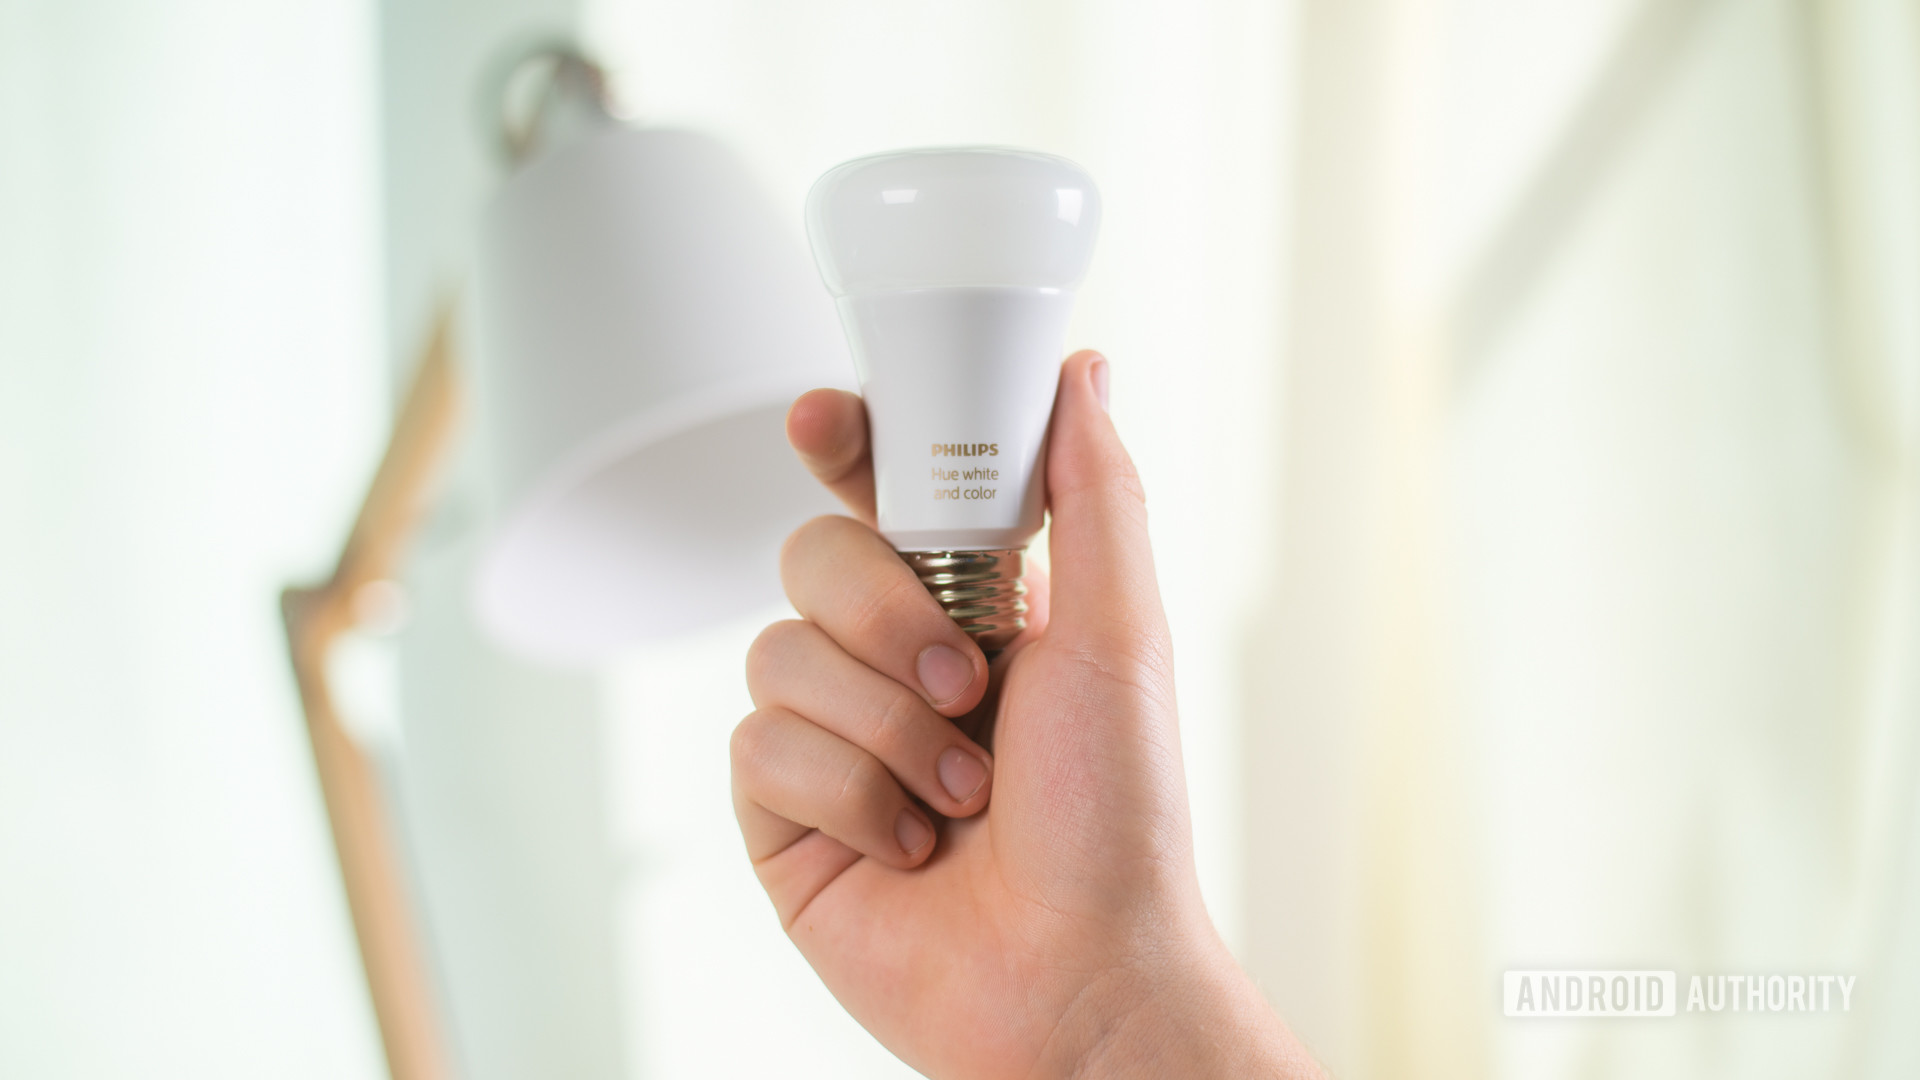 Philips Hue light bulb for smart home